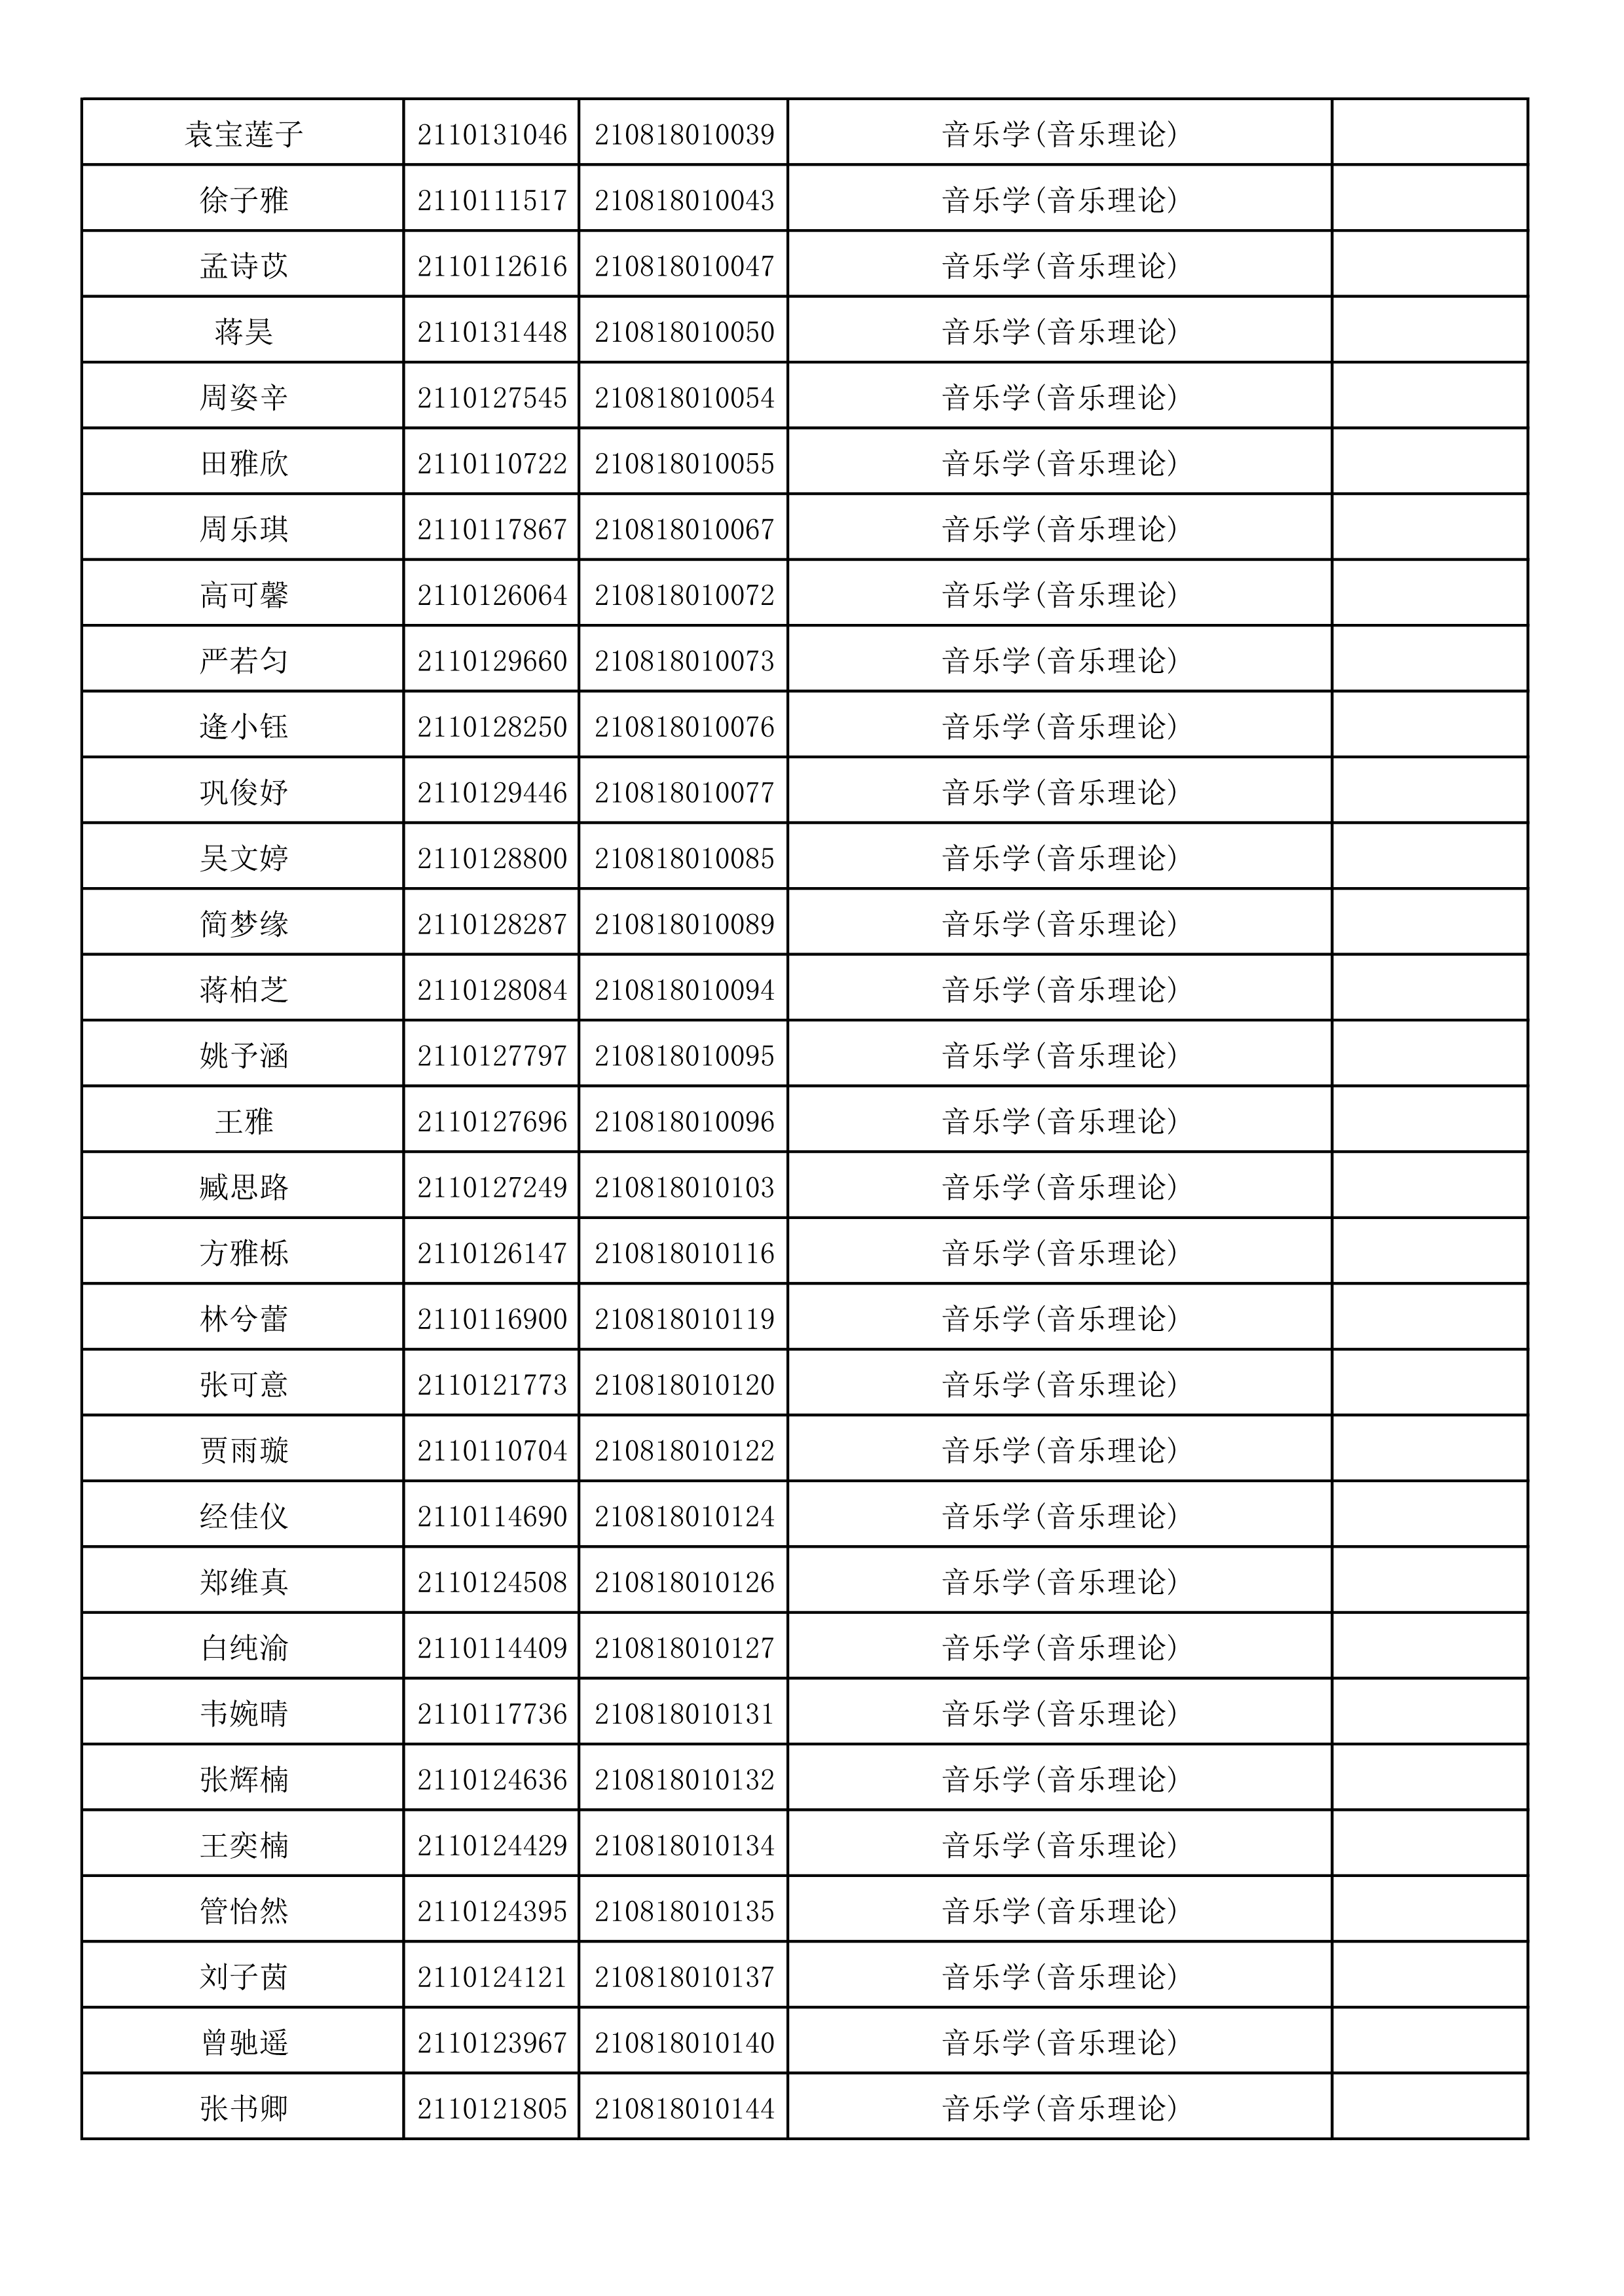 附件2：浙江音乐学院2021年本科招生专业校考初试合格考生名单_7.png